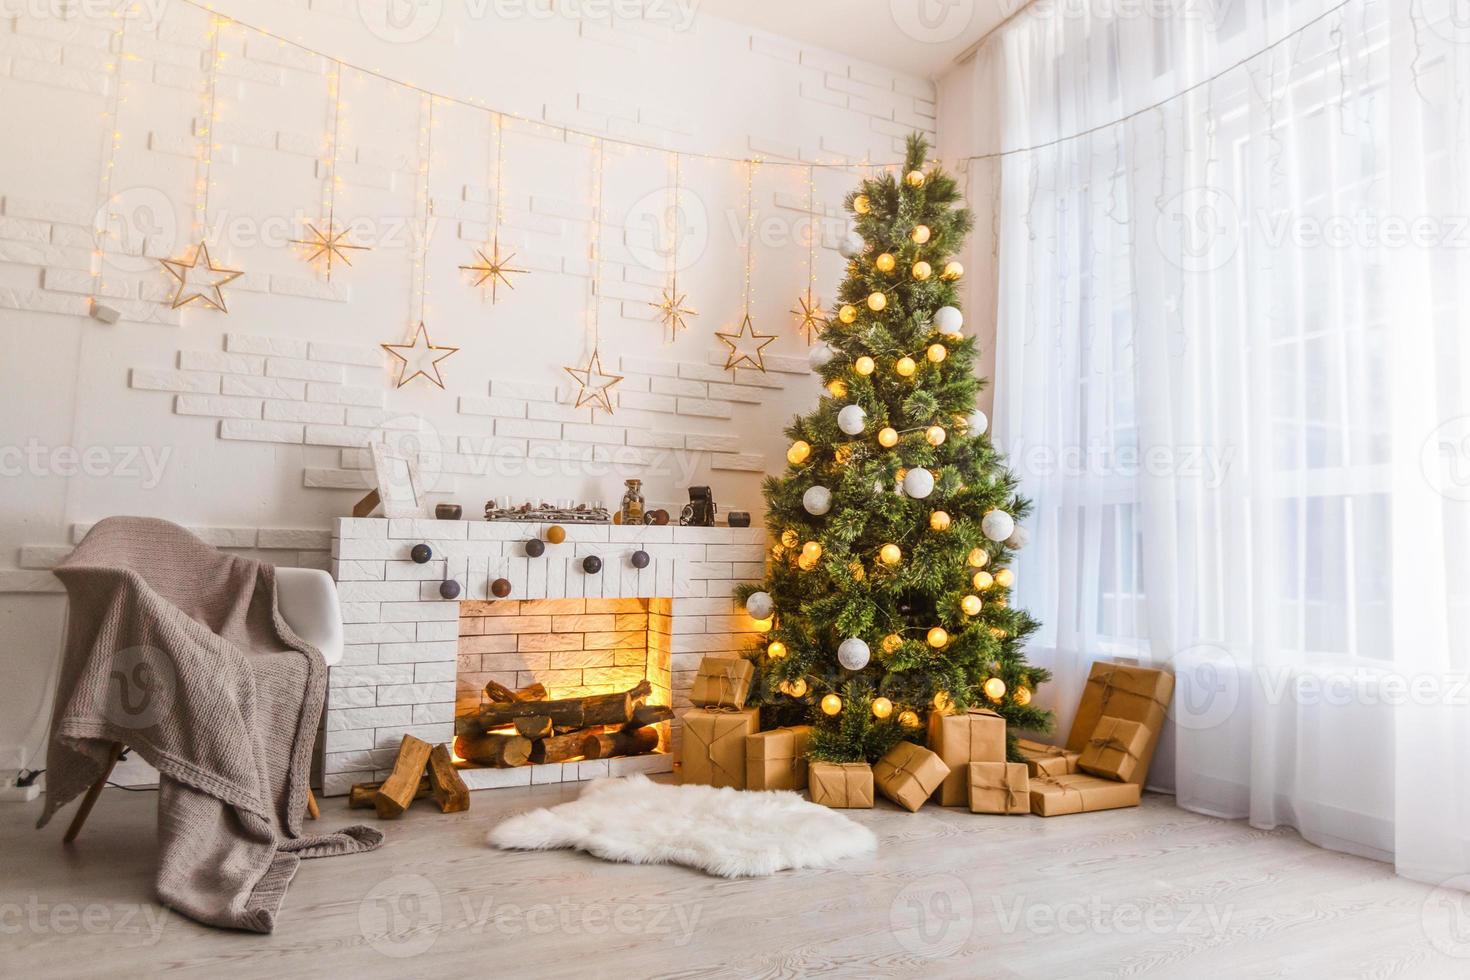 quarto interior decorado em estilo natalino. ninguém. cores neutras. conforto doméstico da casa moderna. uma série de fotos